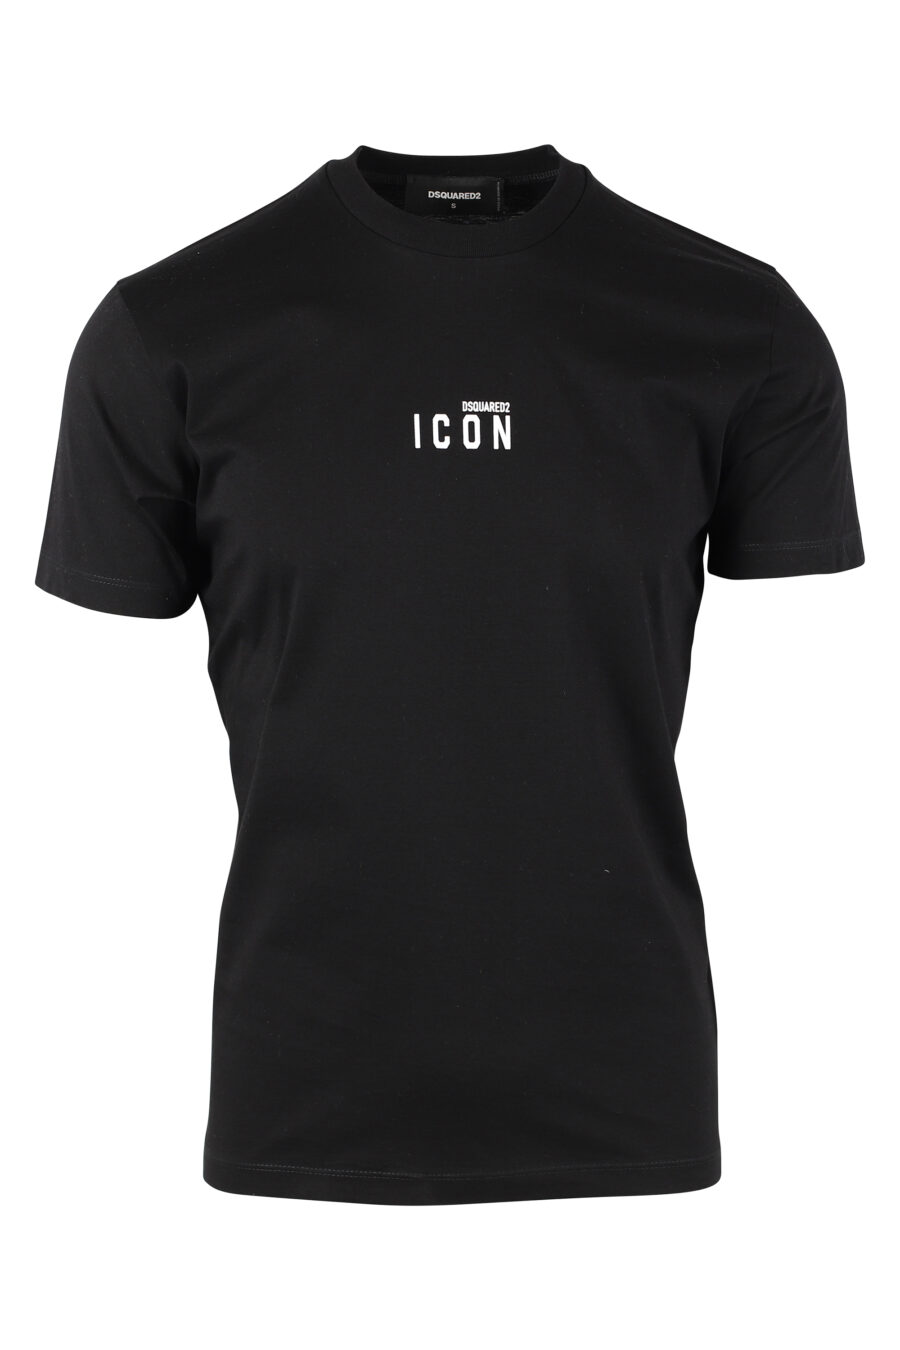 Camiseta negra con minilogo "icon" - IMG 9766